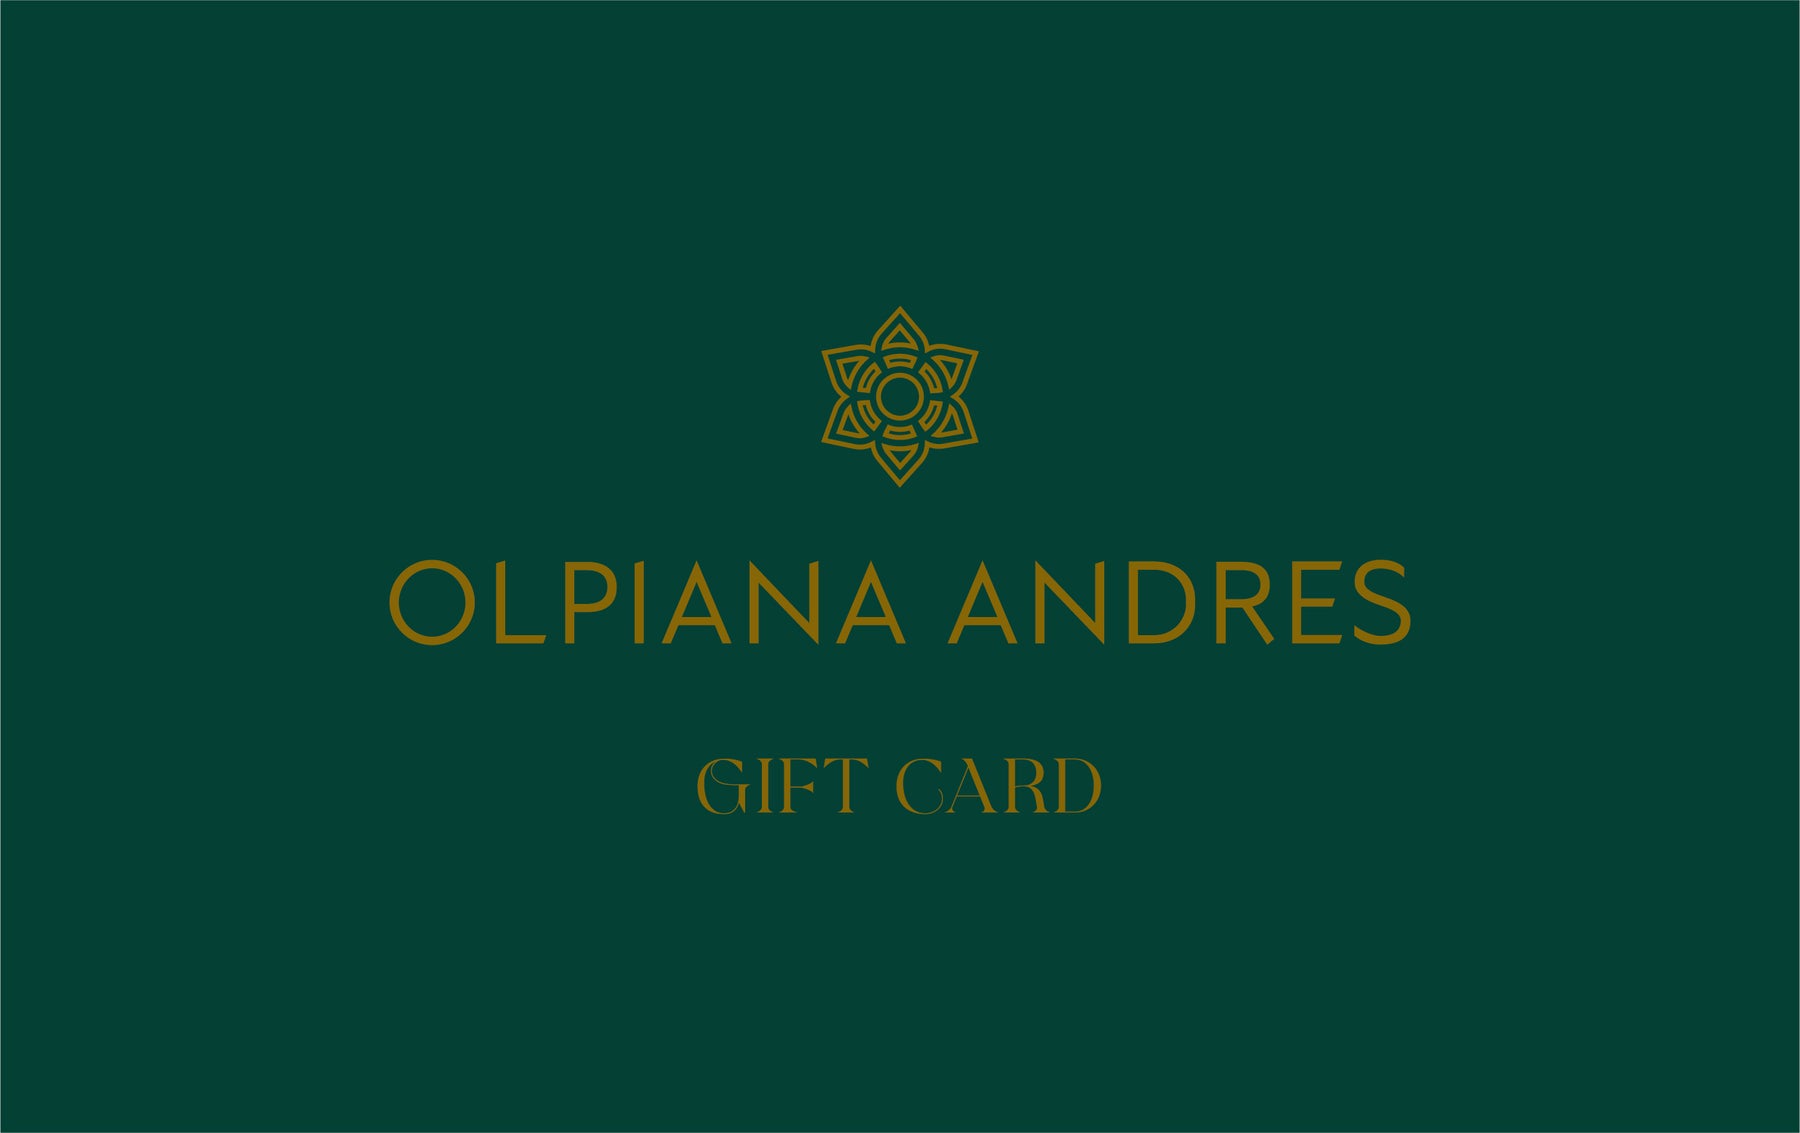 Olpiana Andres Gift Card